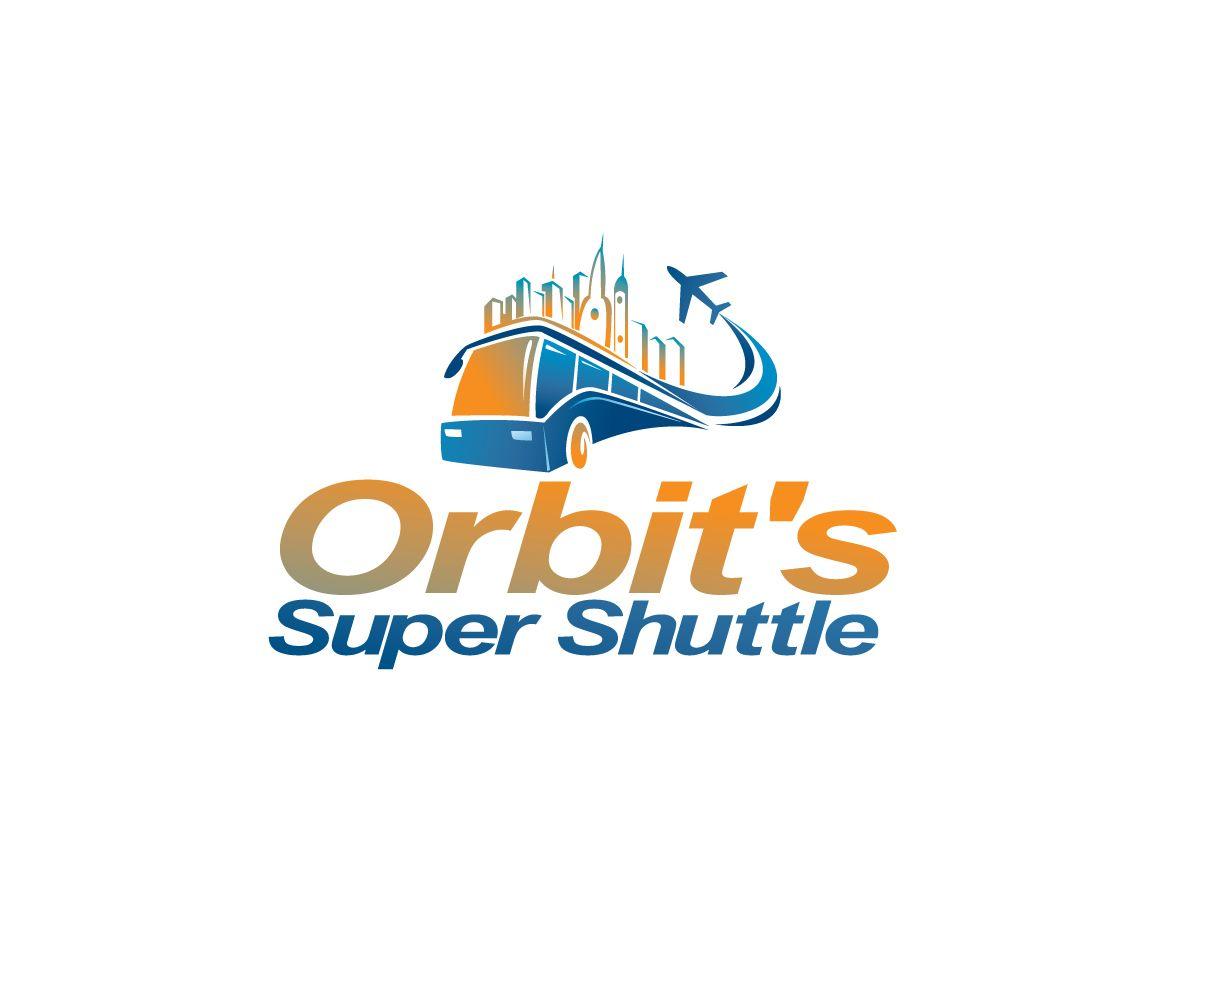 Shuttle Logo - Upmarket, Bold, Airport Logo Design for Orbit's Super Shuttle